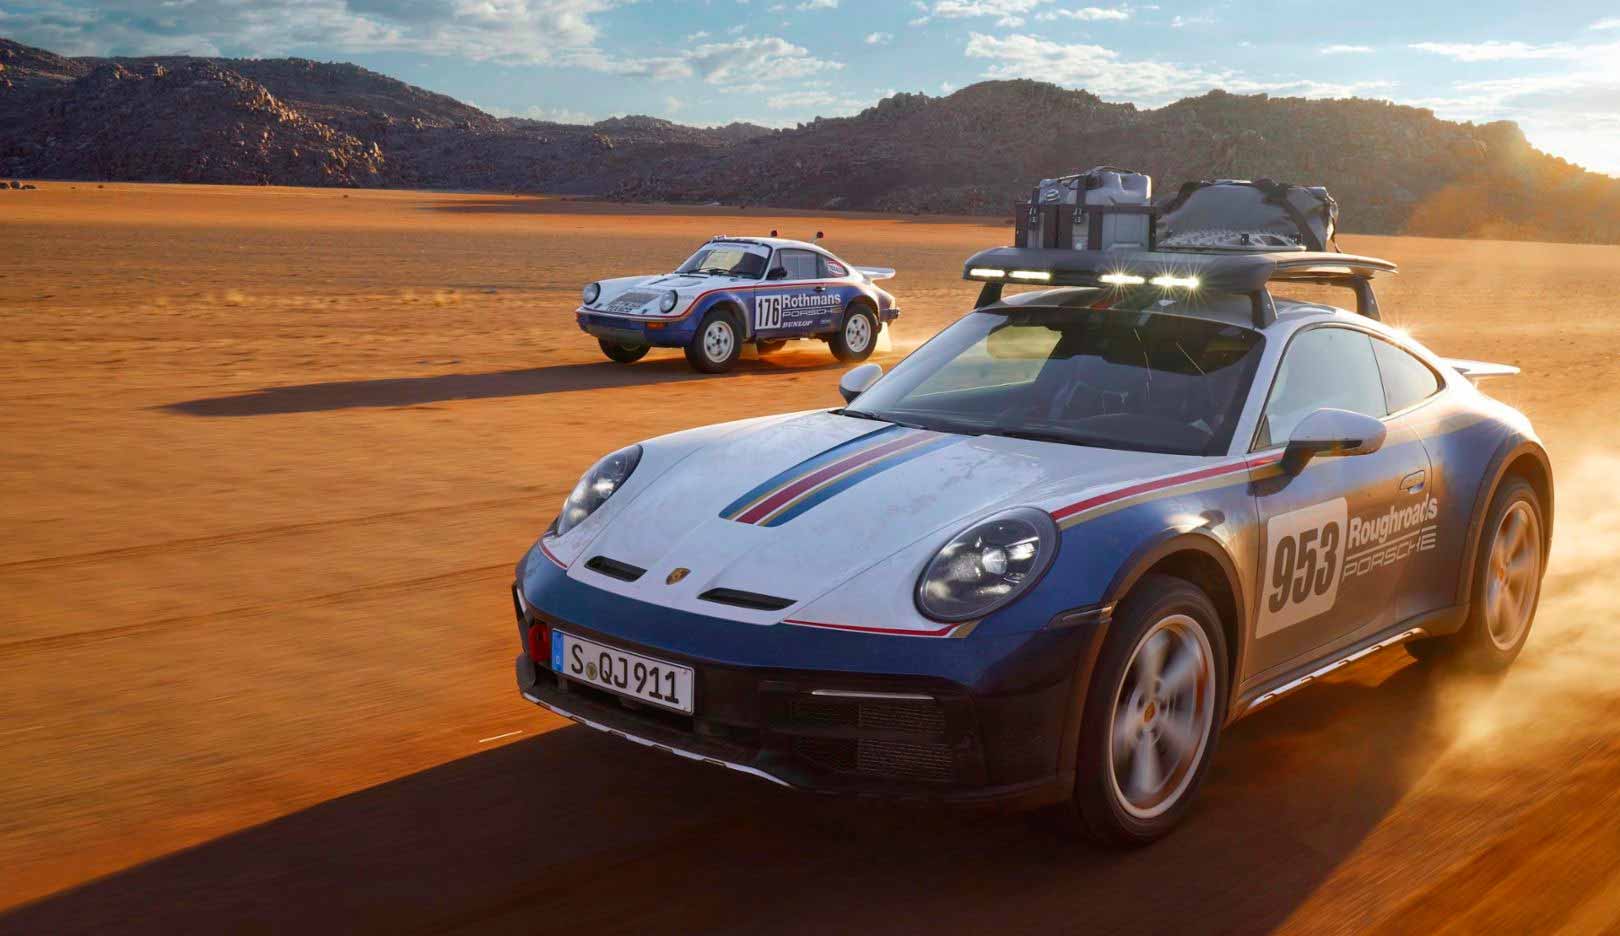 Novo Porsche 911 Dakar